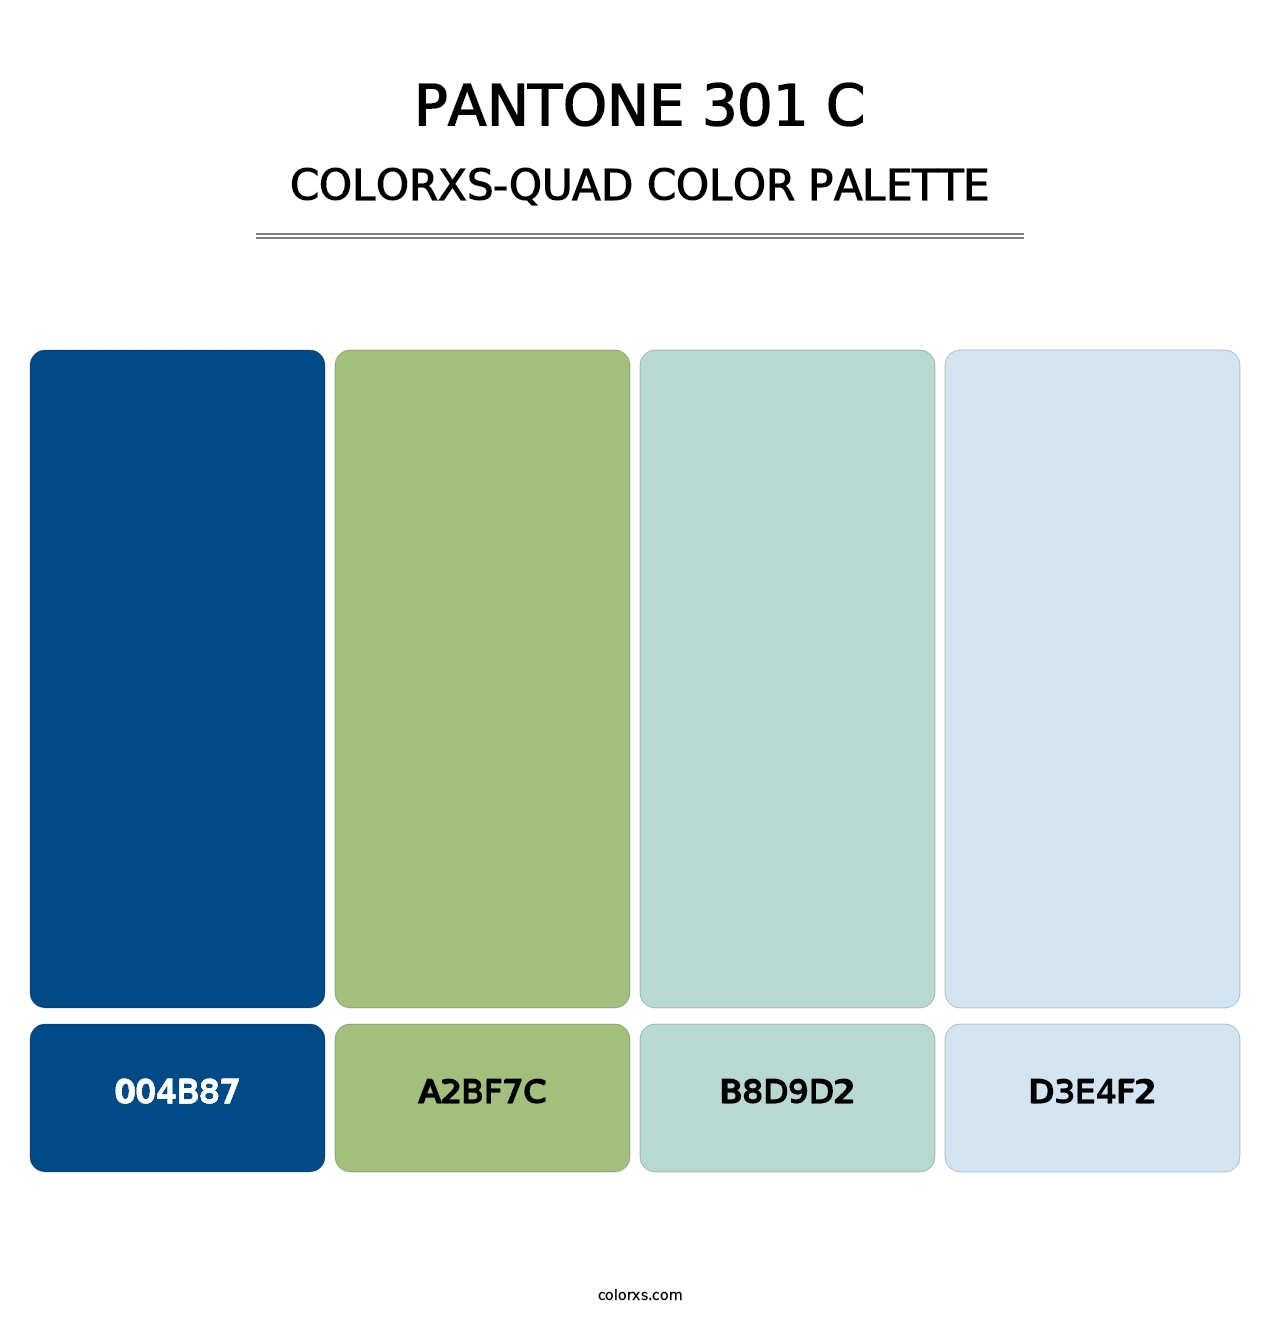 PANTONE 301 C - Colorxs Quad Palette